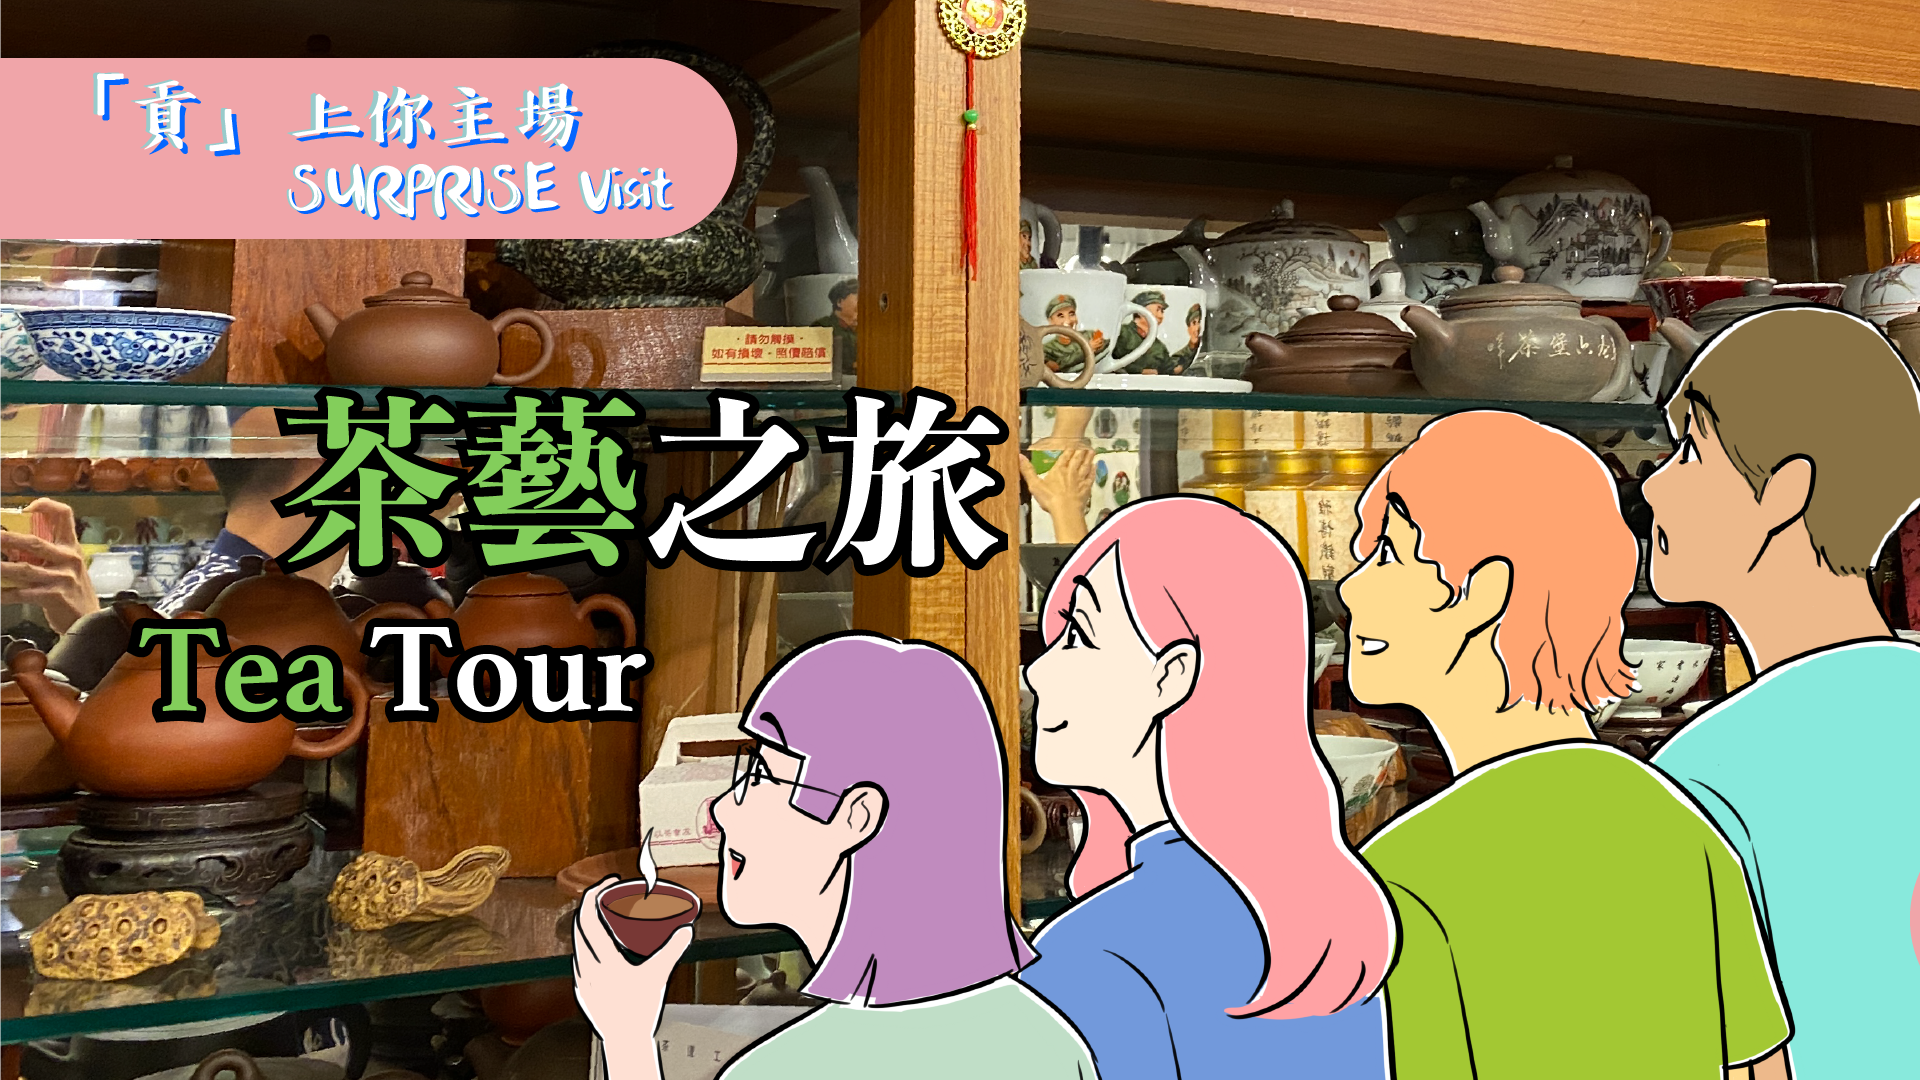 「貢」上你主場 - 茶藝之旅 "SURPRISE Visit" - Tea Tour